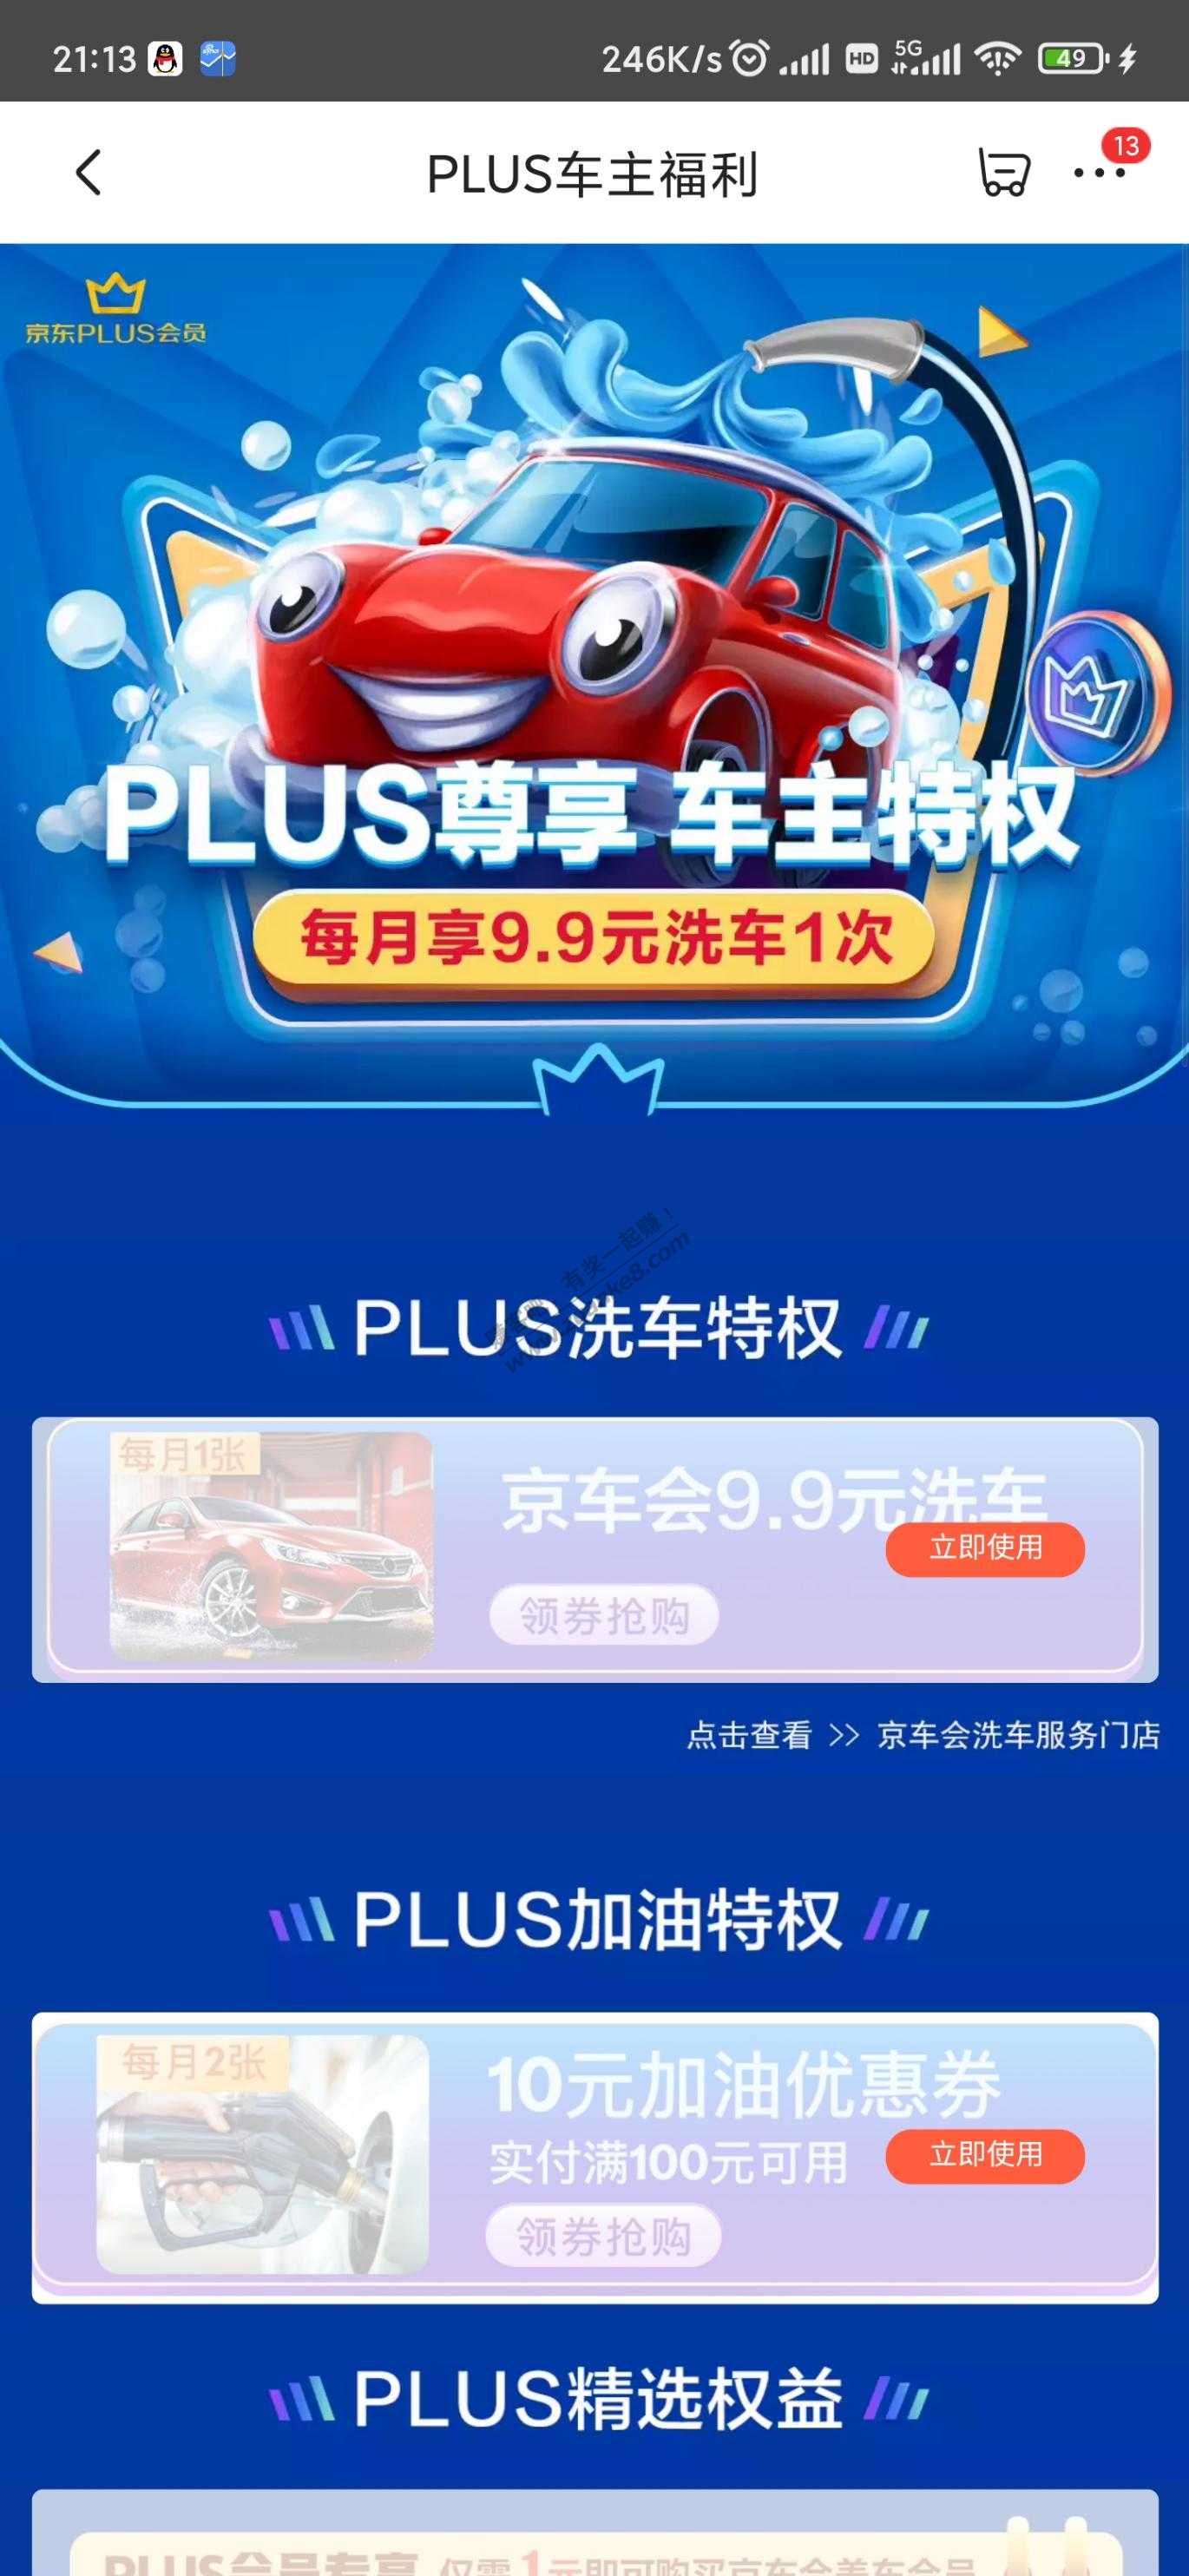 京东plus-车主福利-惠小助(52huixz.com)